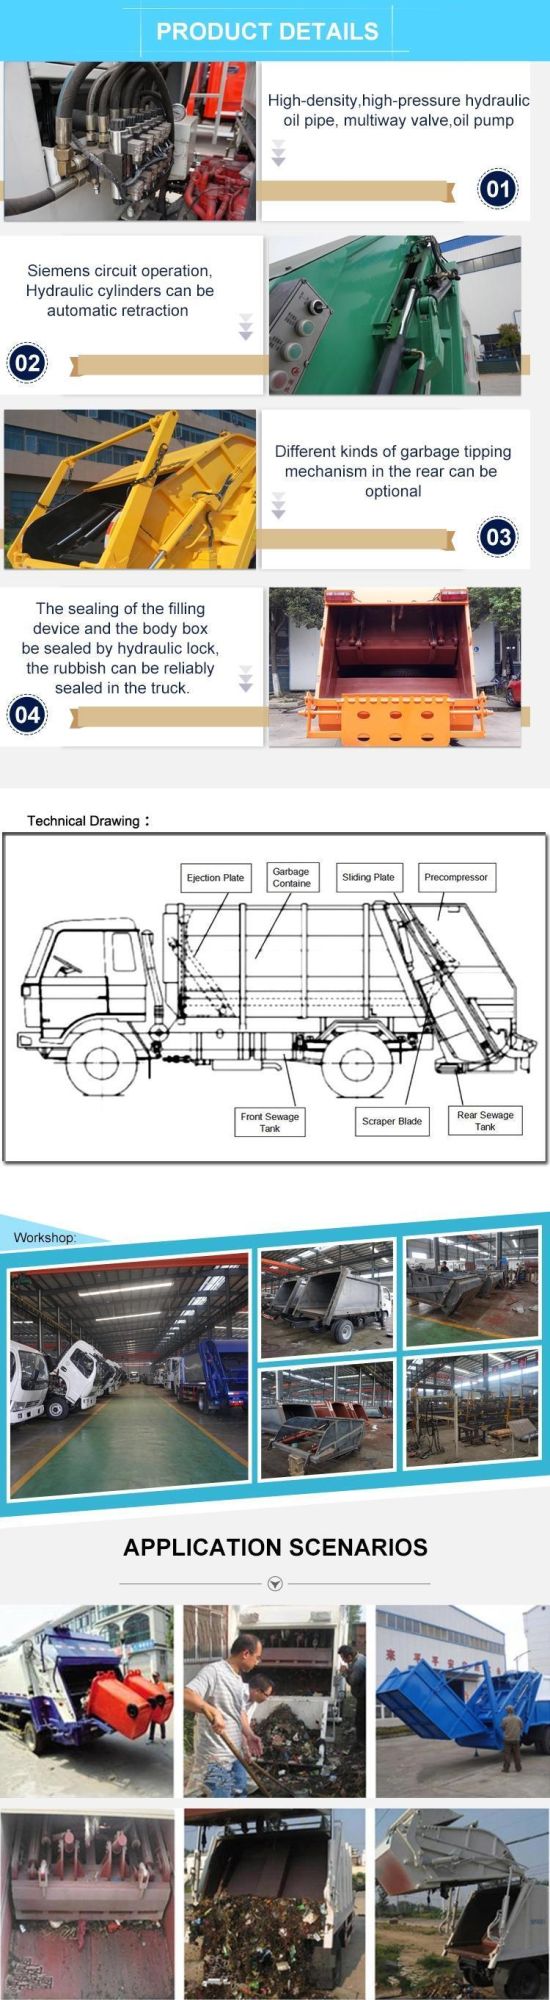 Sino Heavy Waste Compactor Truck Waste Compactors